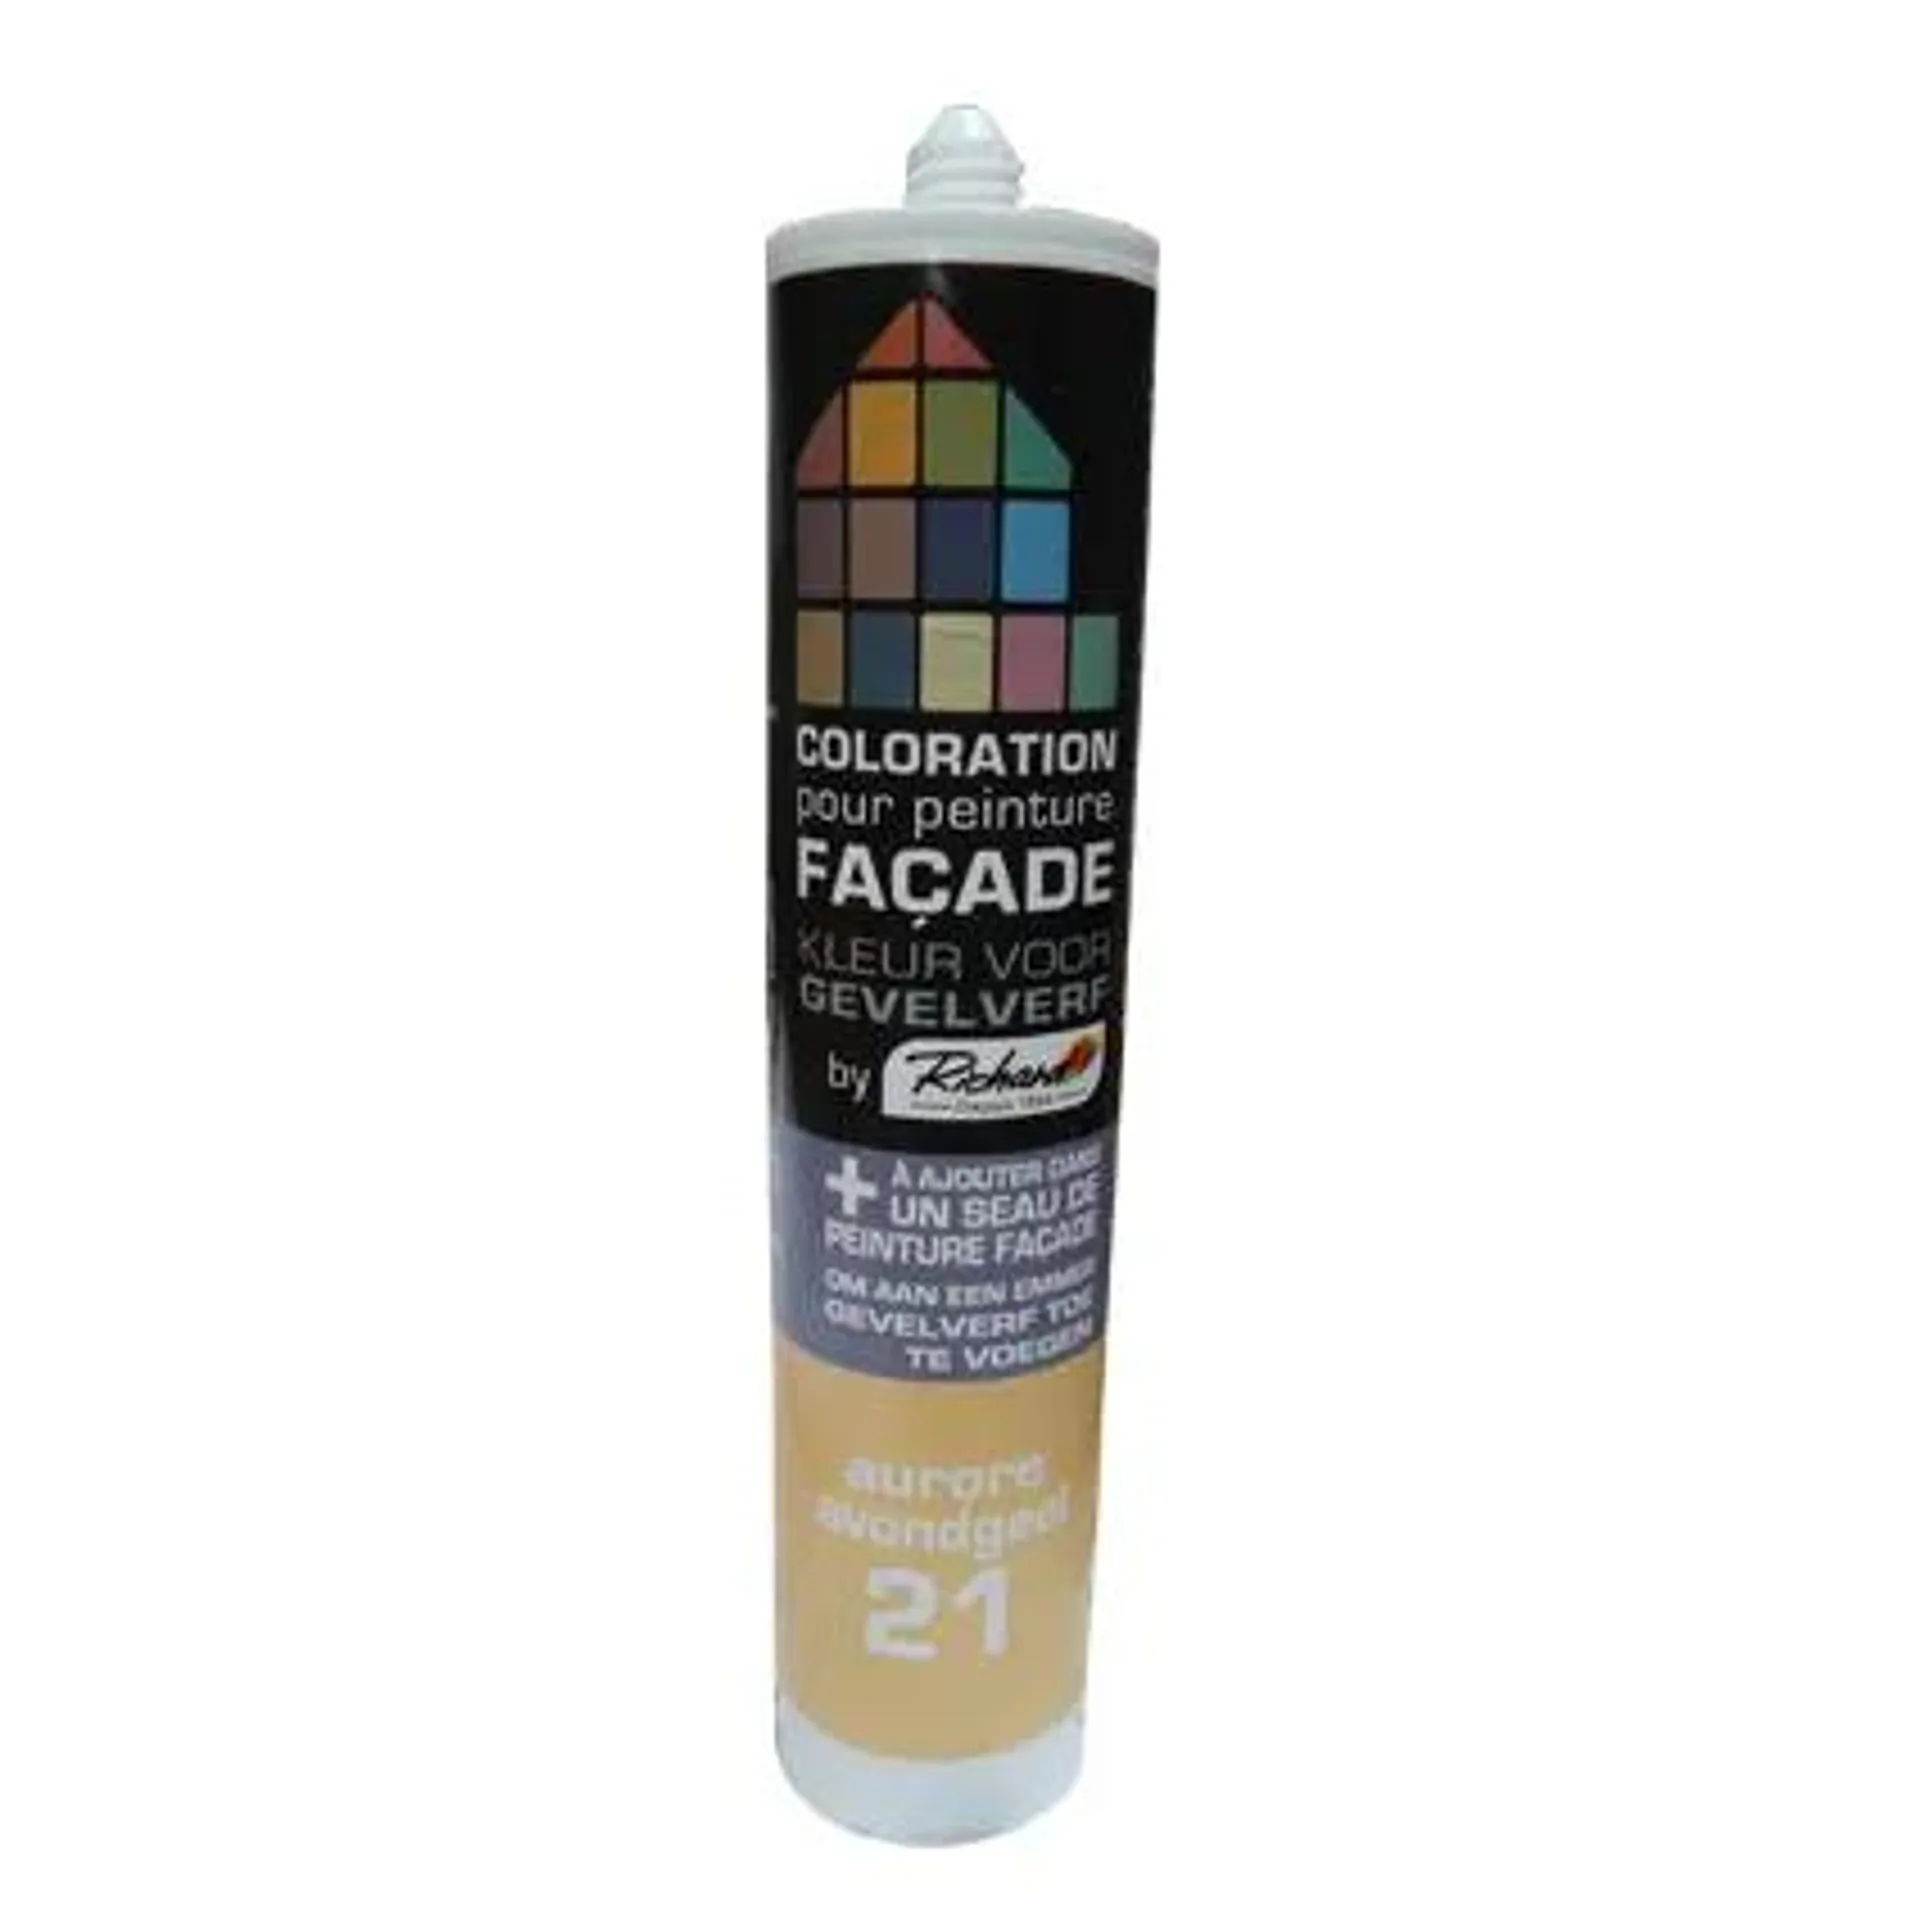 Colorant pour peinture façades Richard aurore 450 gr